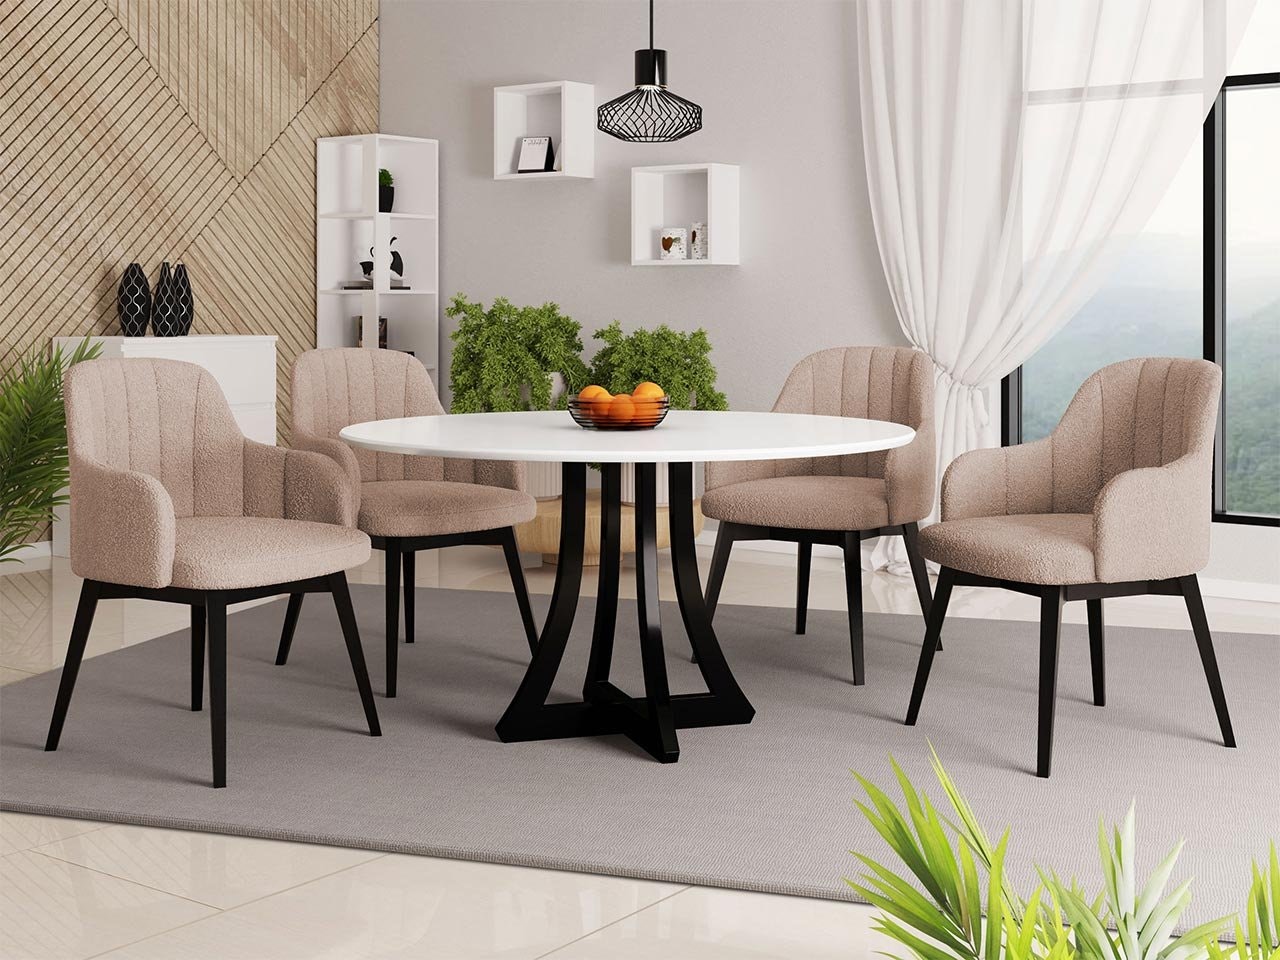 MATGRUPP DAGERTO RUNT BORD 100 CM MED 4 STOLAR ST105 - Mina Möbler -  moderna och exklusiva möbler för ditt hem.